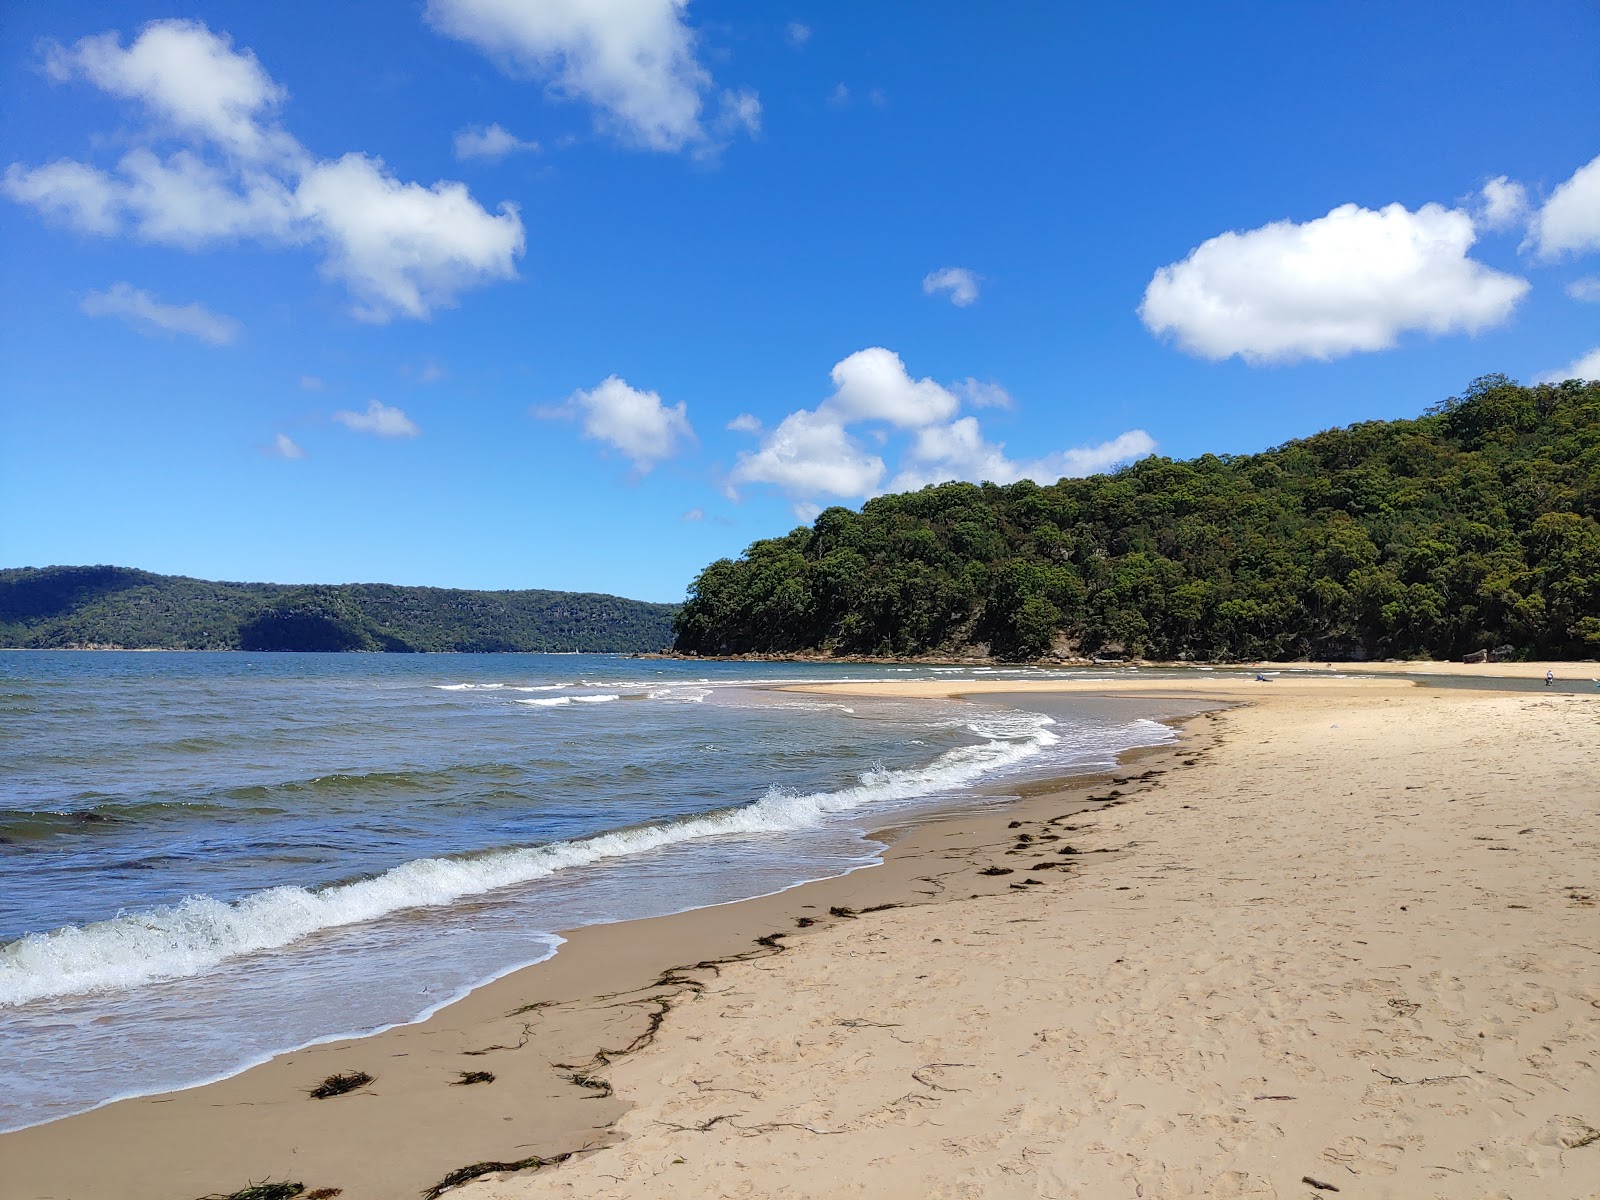 Fotografie cu Patonga Beach - locul popular printre cunoscătorii de relaxare